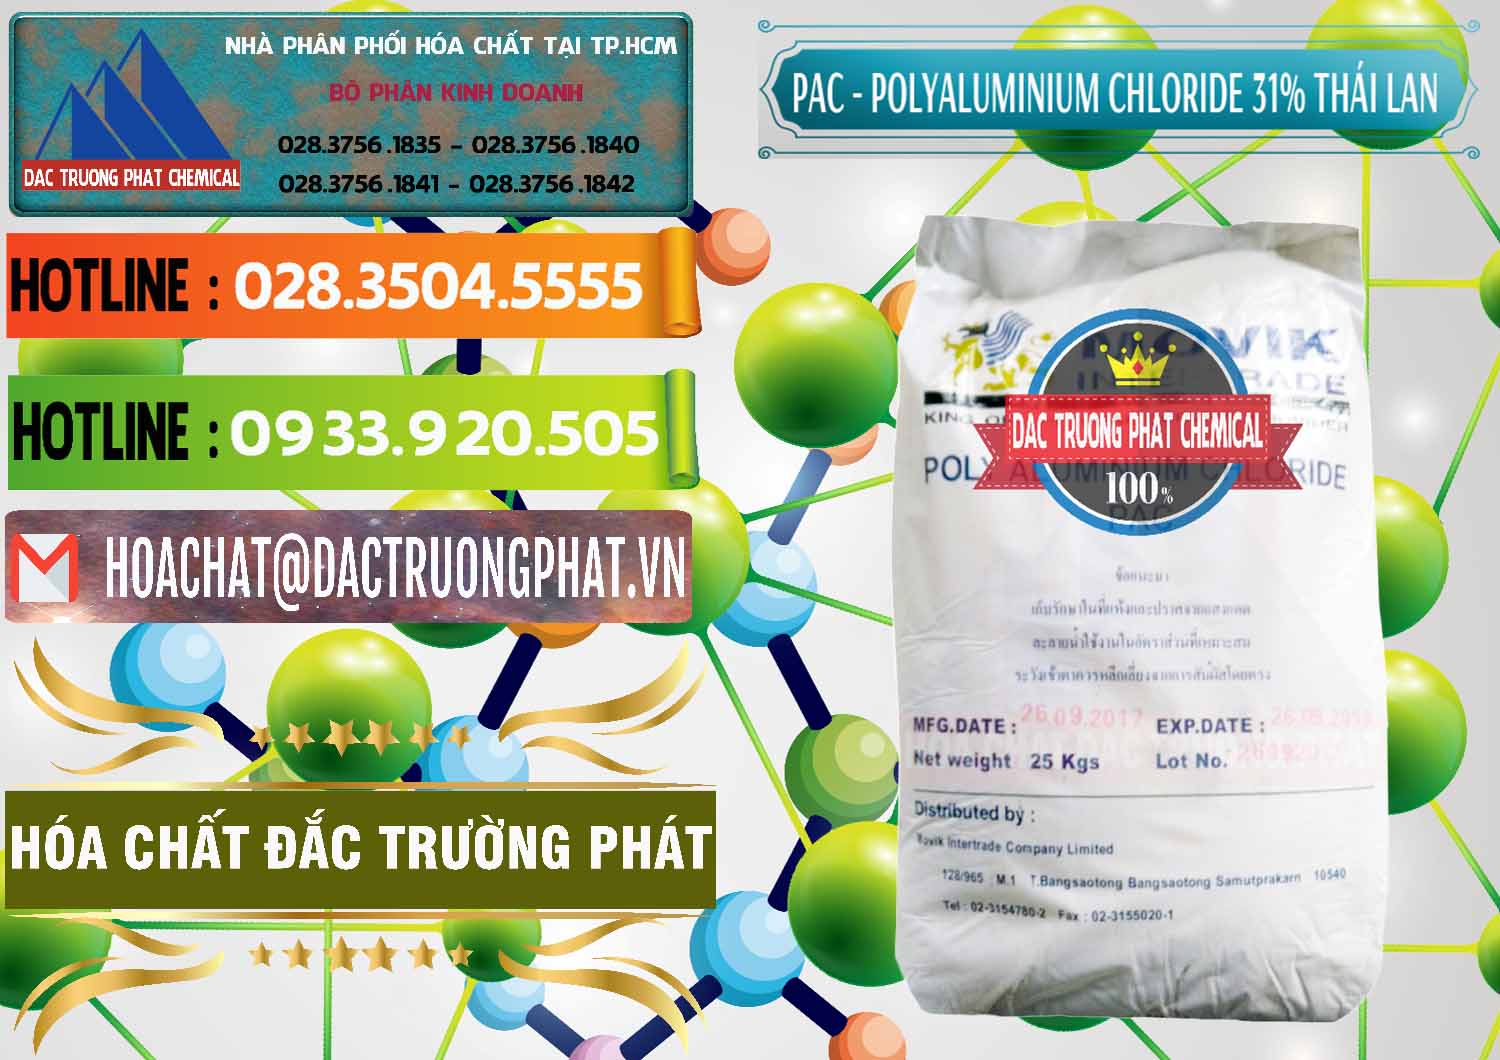 Công ty bán - cung cấp PAC - Polyaluminium Chloride 31% Thái Lan Thailand - 0469 - Cty chuyên cung cấp _ bán hóa chất tại TP.HCM - cungcaphoachat.com.vn